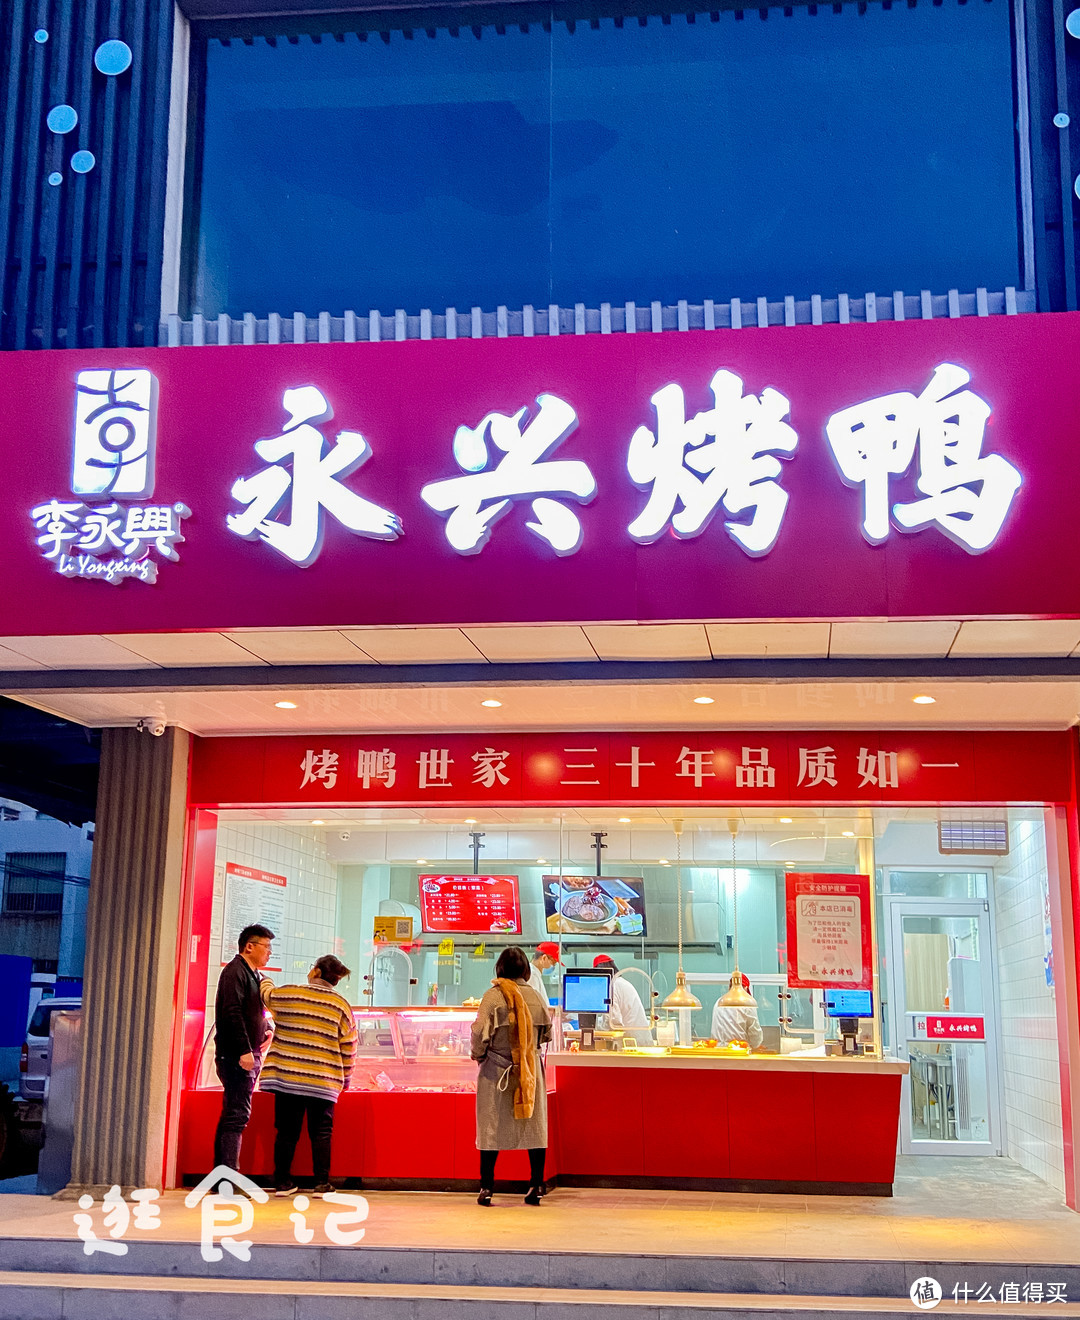 扬州这家烤鸭店开了30年路人都说香爆了所以就这